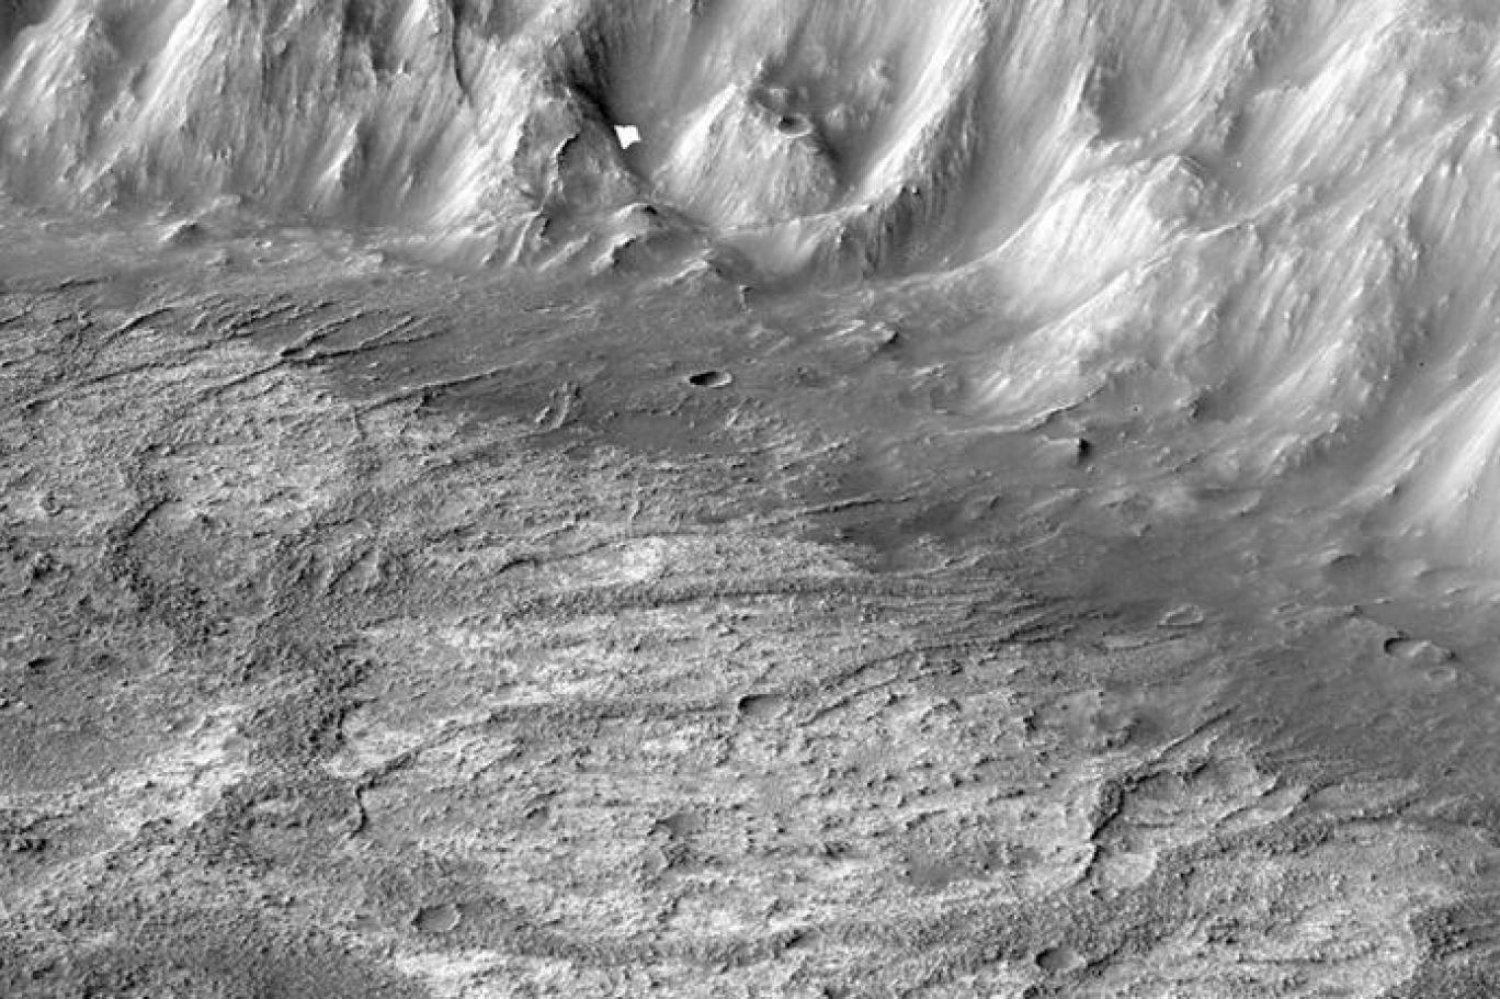 Araştırmada, Mars Reconnaissance Orbiter isimli yörünge aracıyla çekilen yüksek çözünürlüklü fotoğraflar kullanıldı (NASA)

